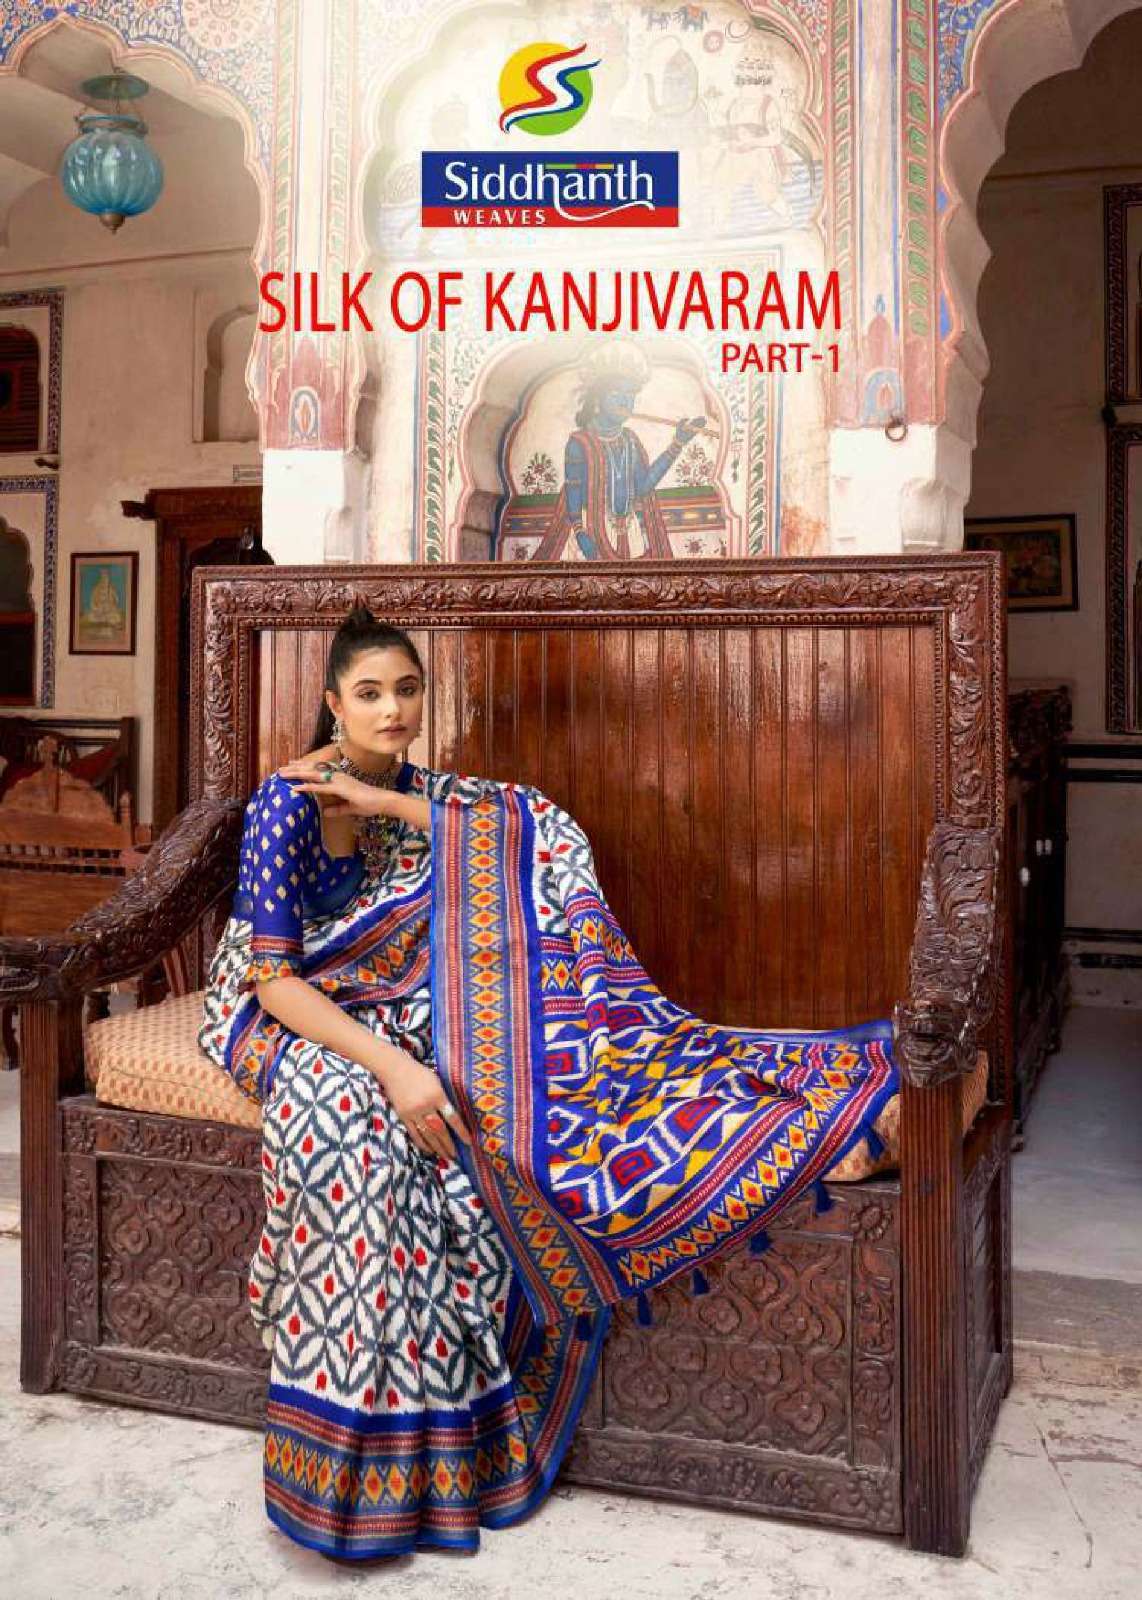 siddhanth weave silk of kanjivaram series 48001-48008 Cotton saree